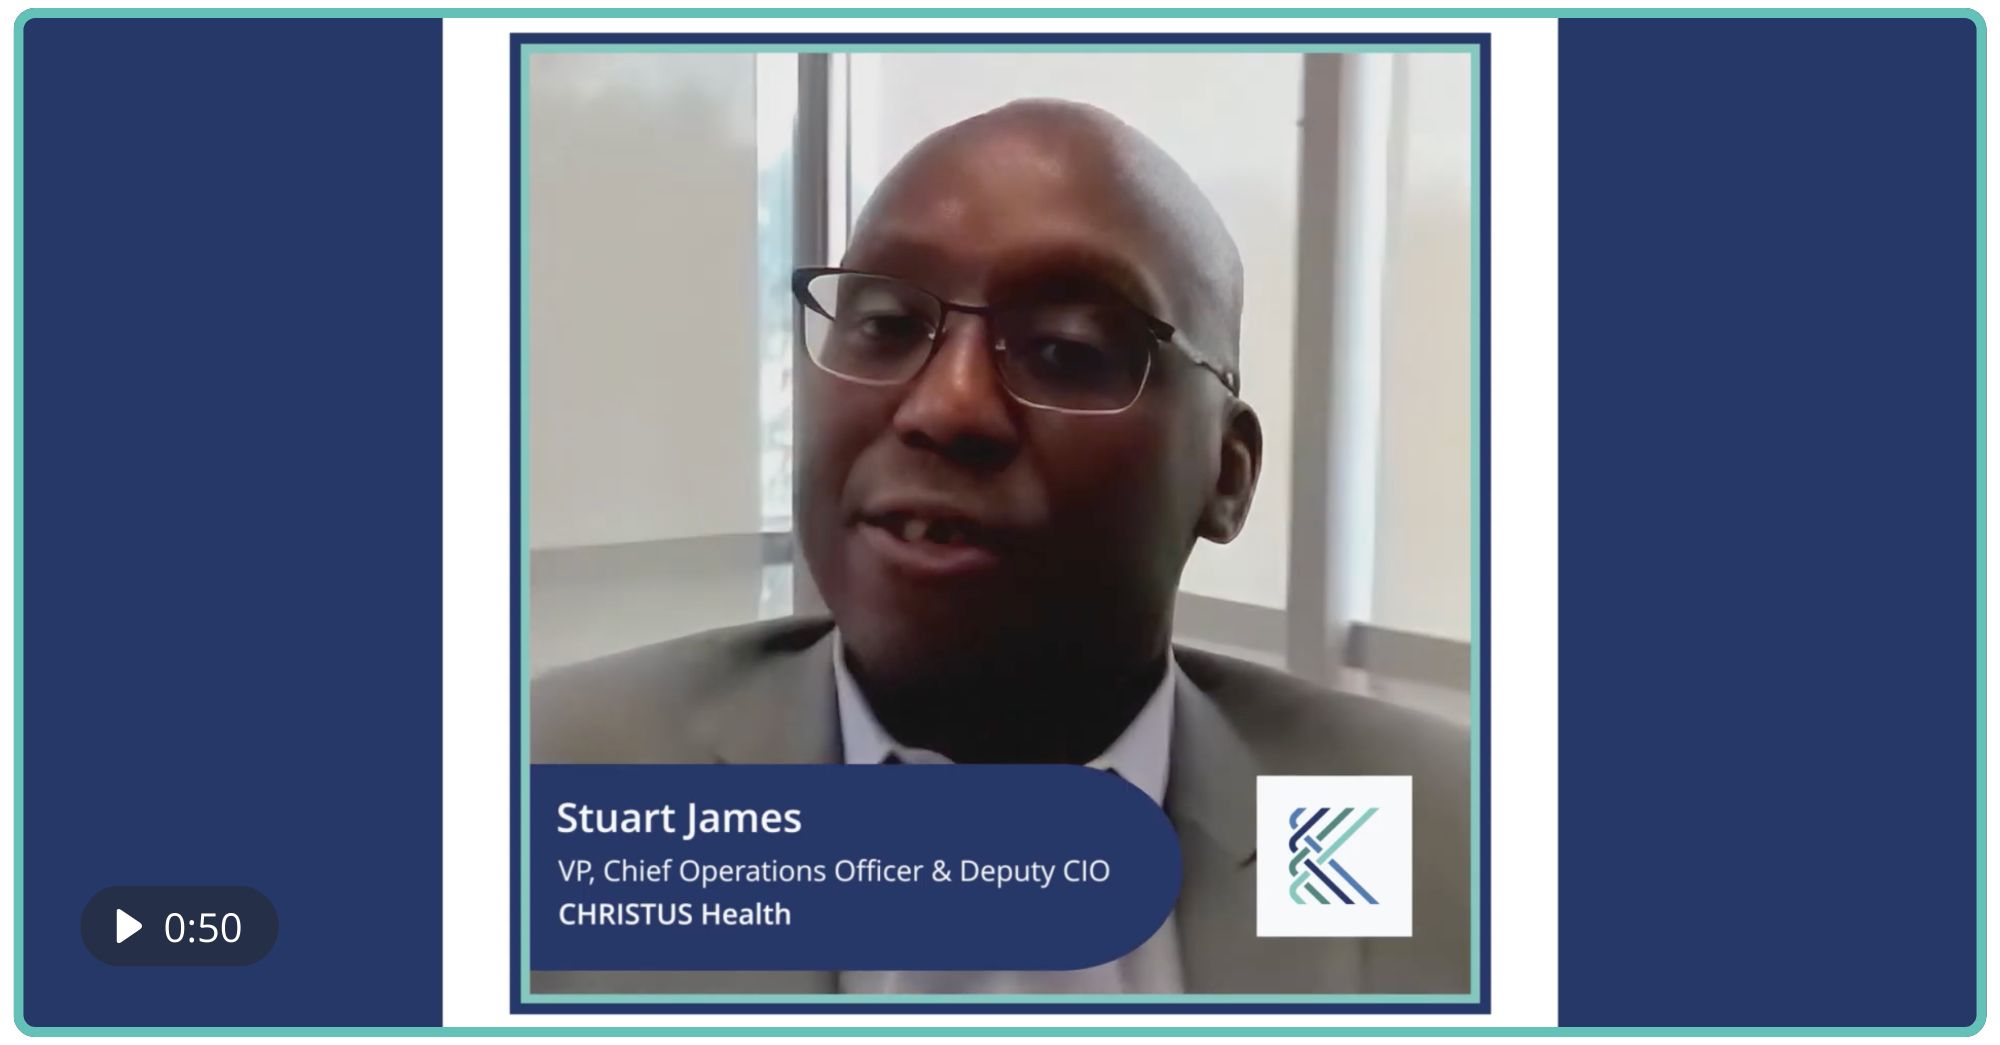 Stuart James on Provider Data Management for CHRISTUS Health